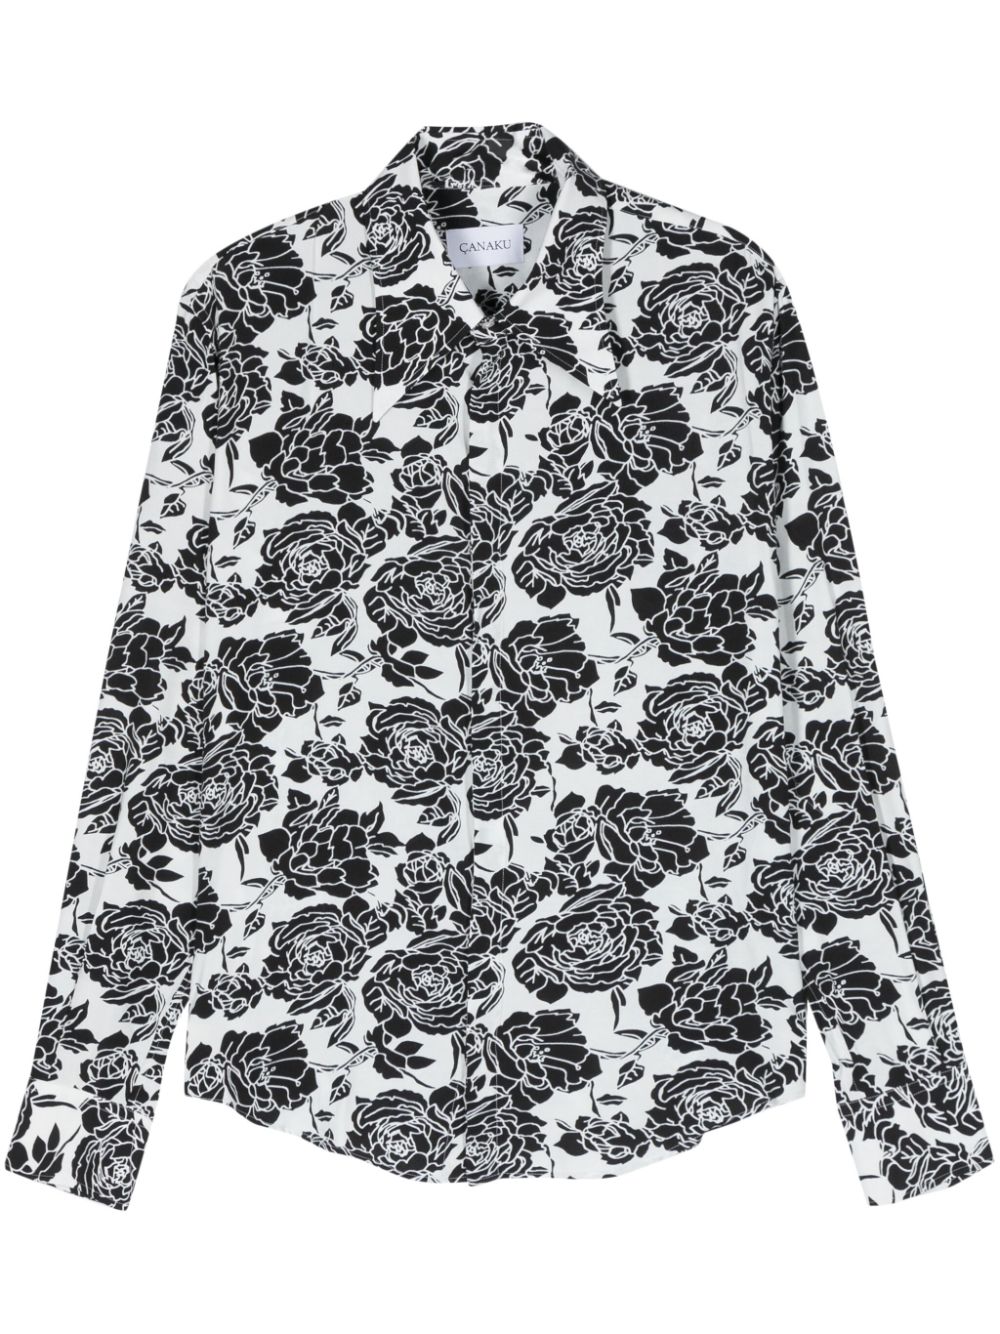 CANAKU Overhemd met bloemenprint Zwart